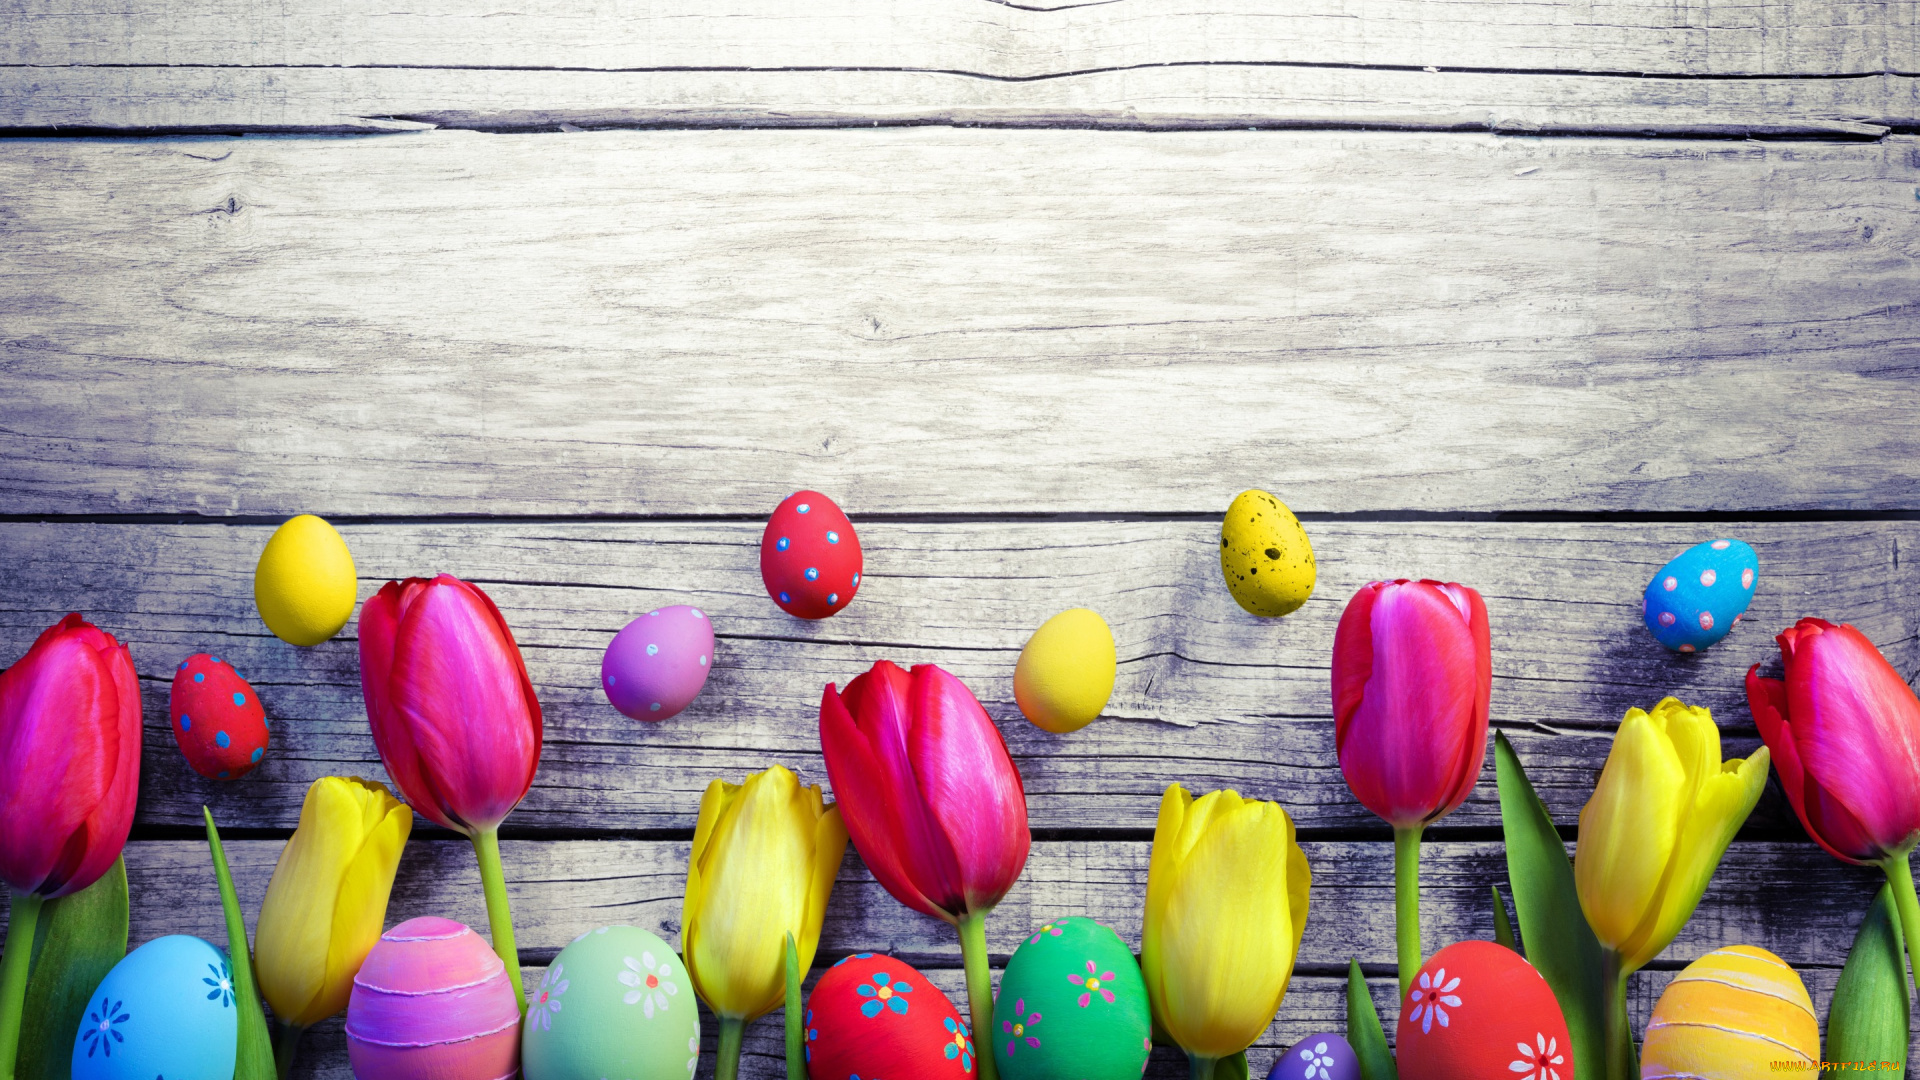 праздничные, пасха, весна, decoration, colorful, wood, easter, тюльпаны, tulips, spring, яйца, крашеные, eggs, flowers, happy, цветы